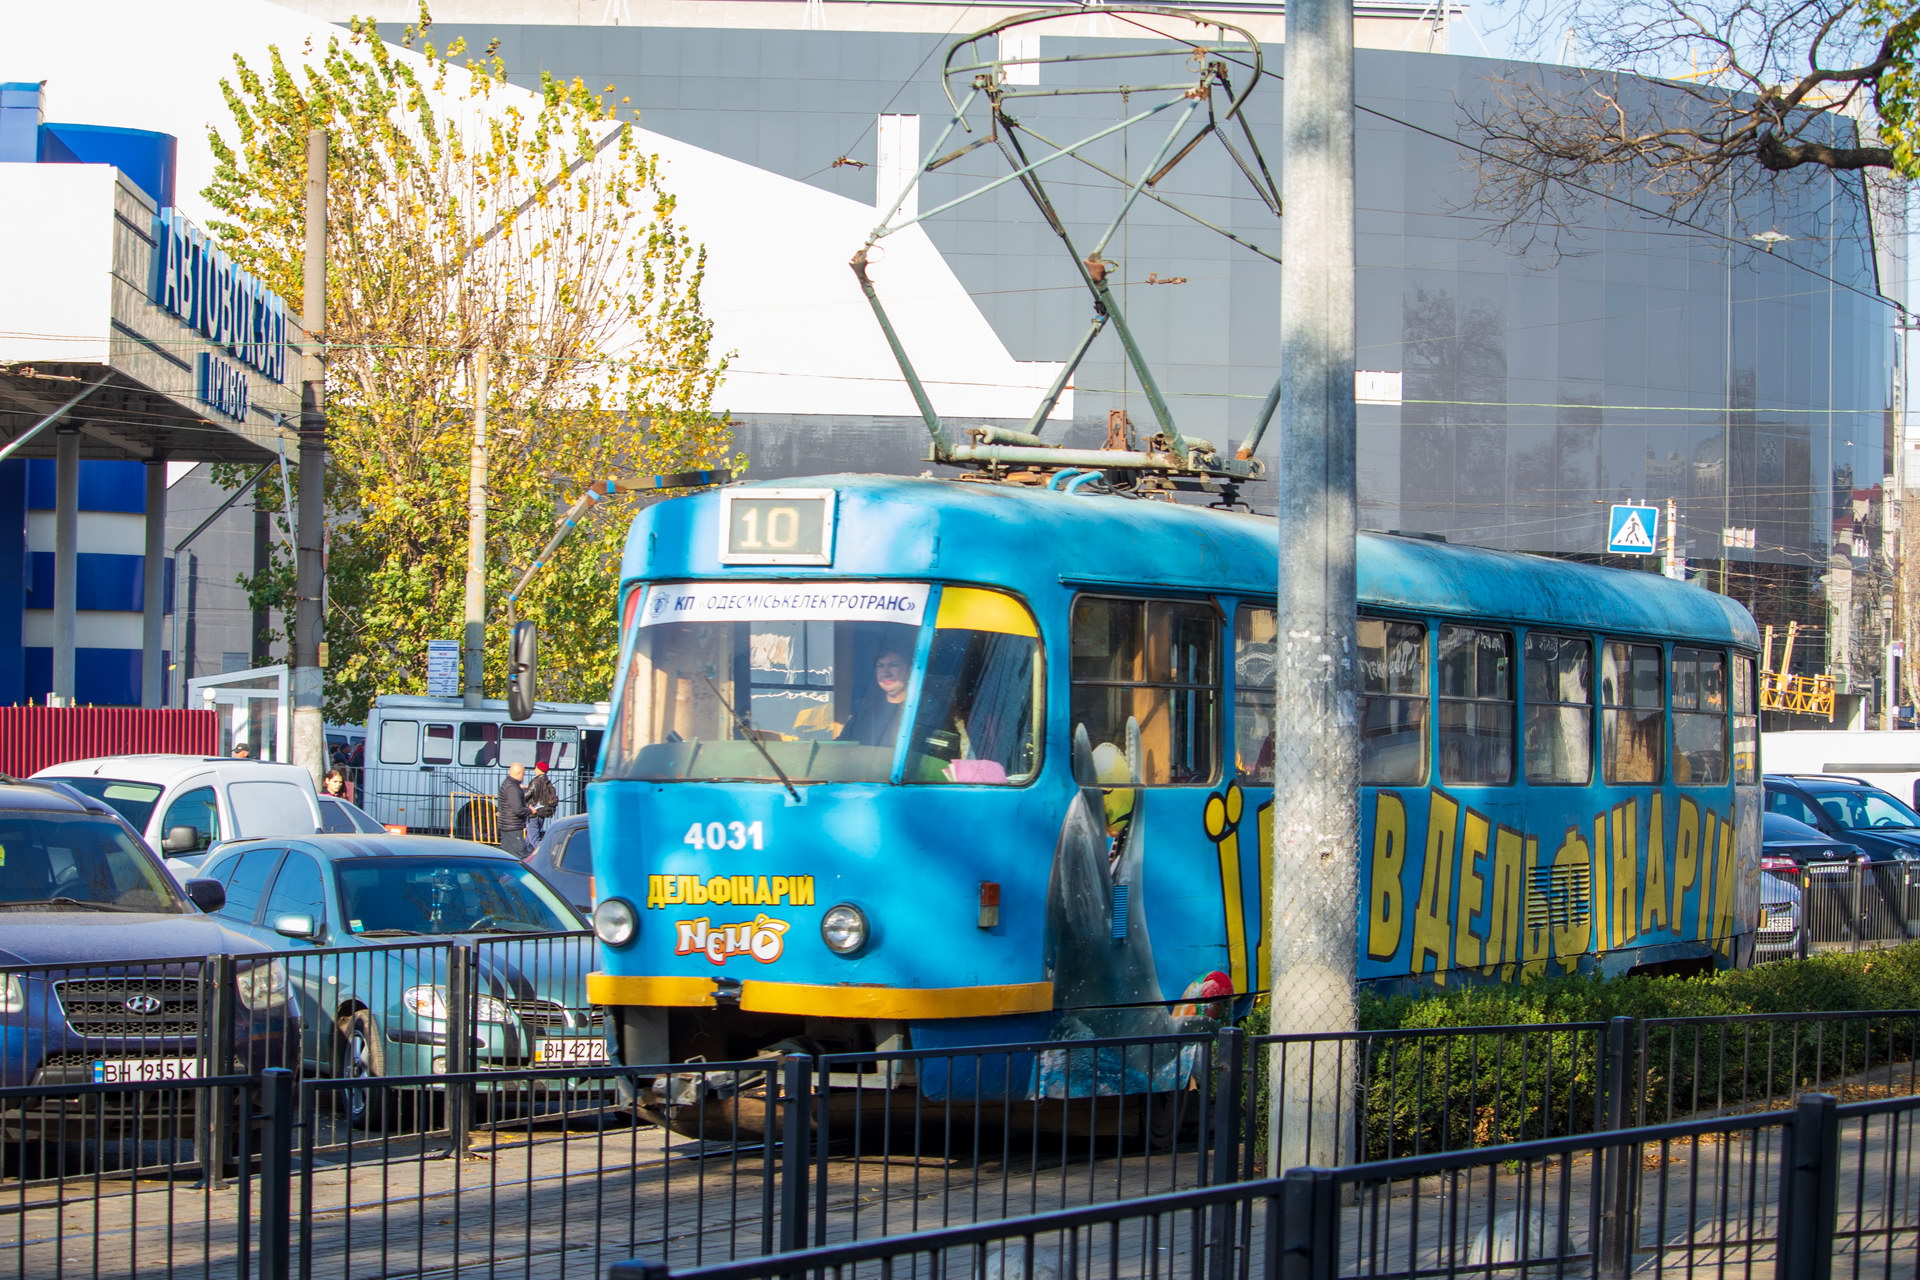 Синий трамвай номер 10 в районе рынка Привоз город Одесса – bur4ik.ru фото 2